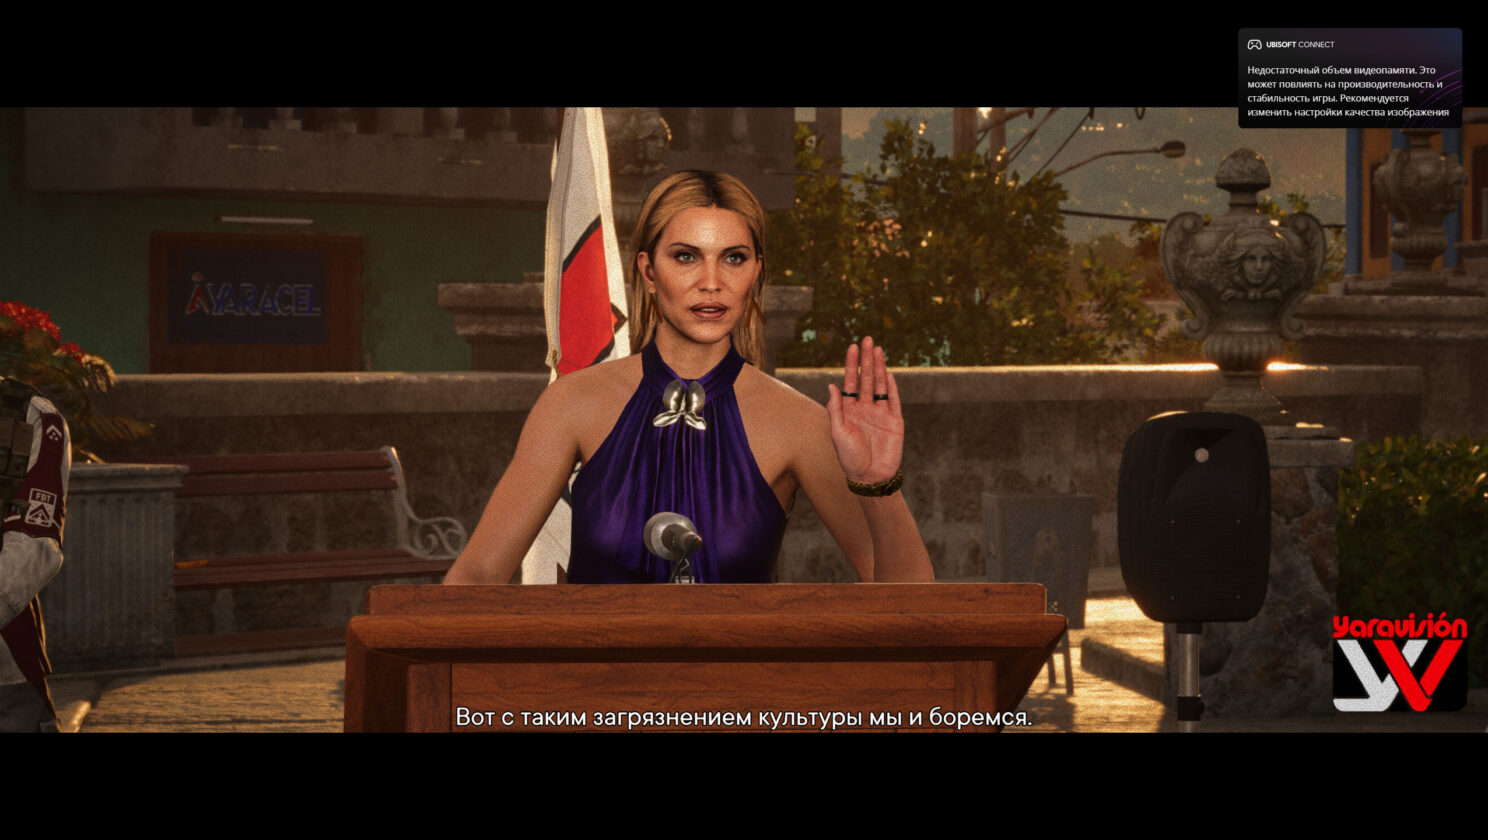 Far Cry 6 Screenshot 2021.10.07 — 10.39.25.40